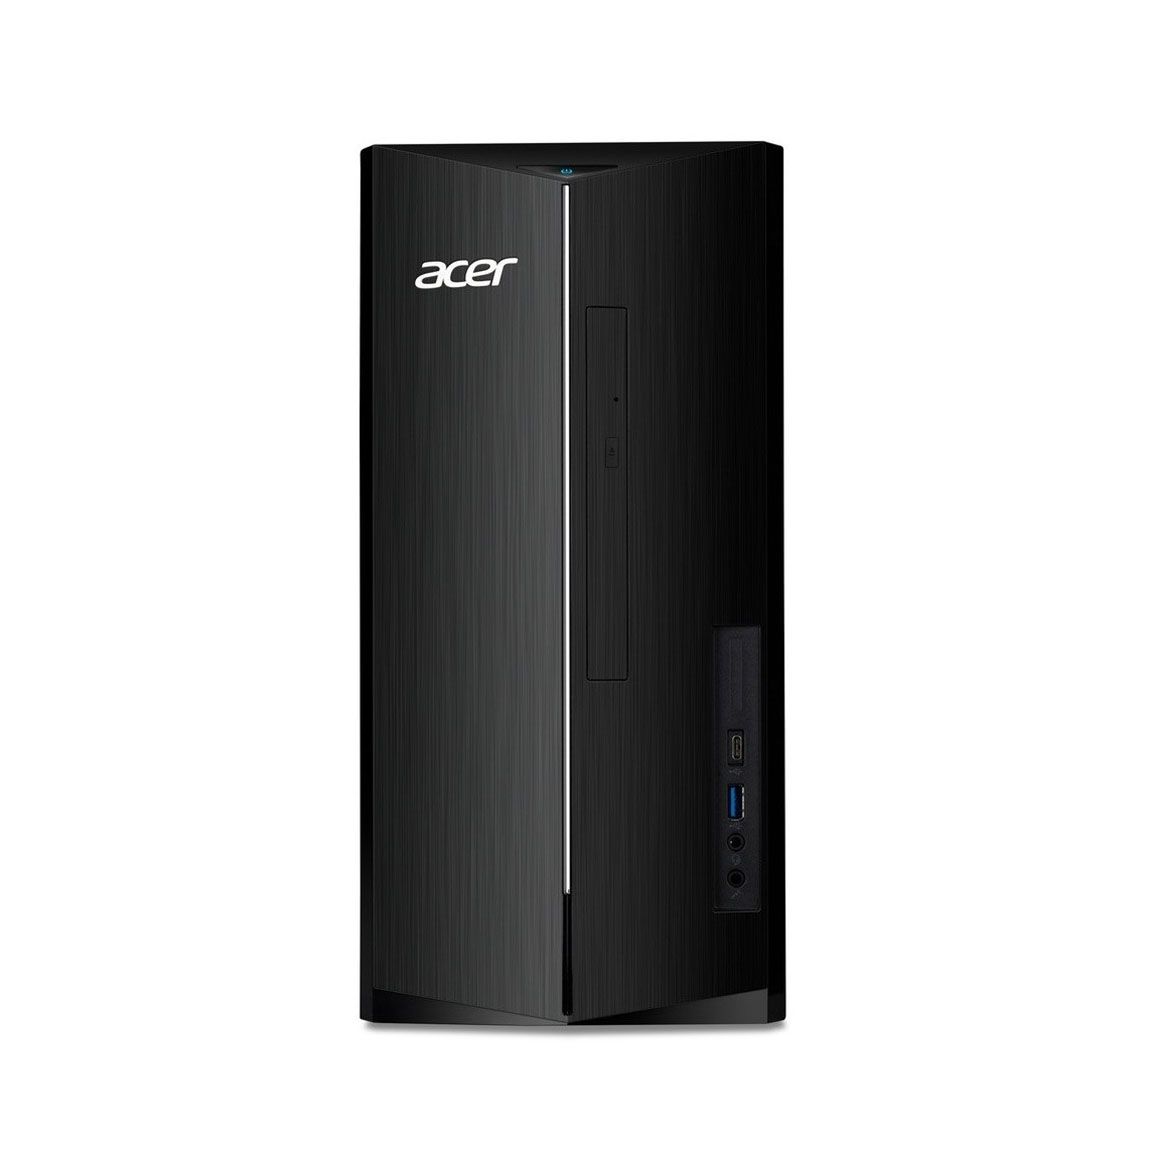 Acer Aspire TC-1760 Desktop PC Intel i5 12th Gen 8GB RAM 1TB HDD & 256GB SSD